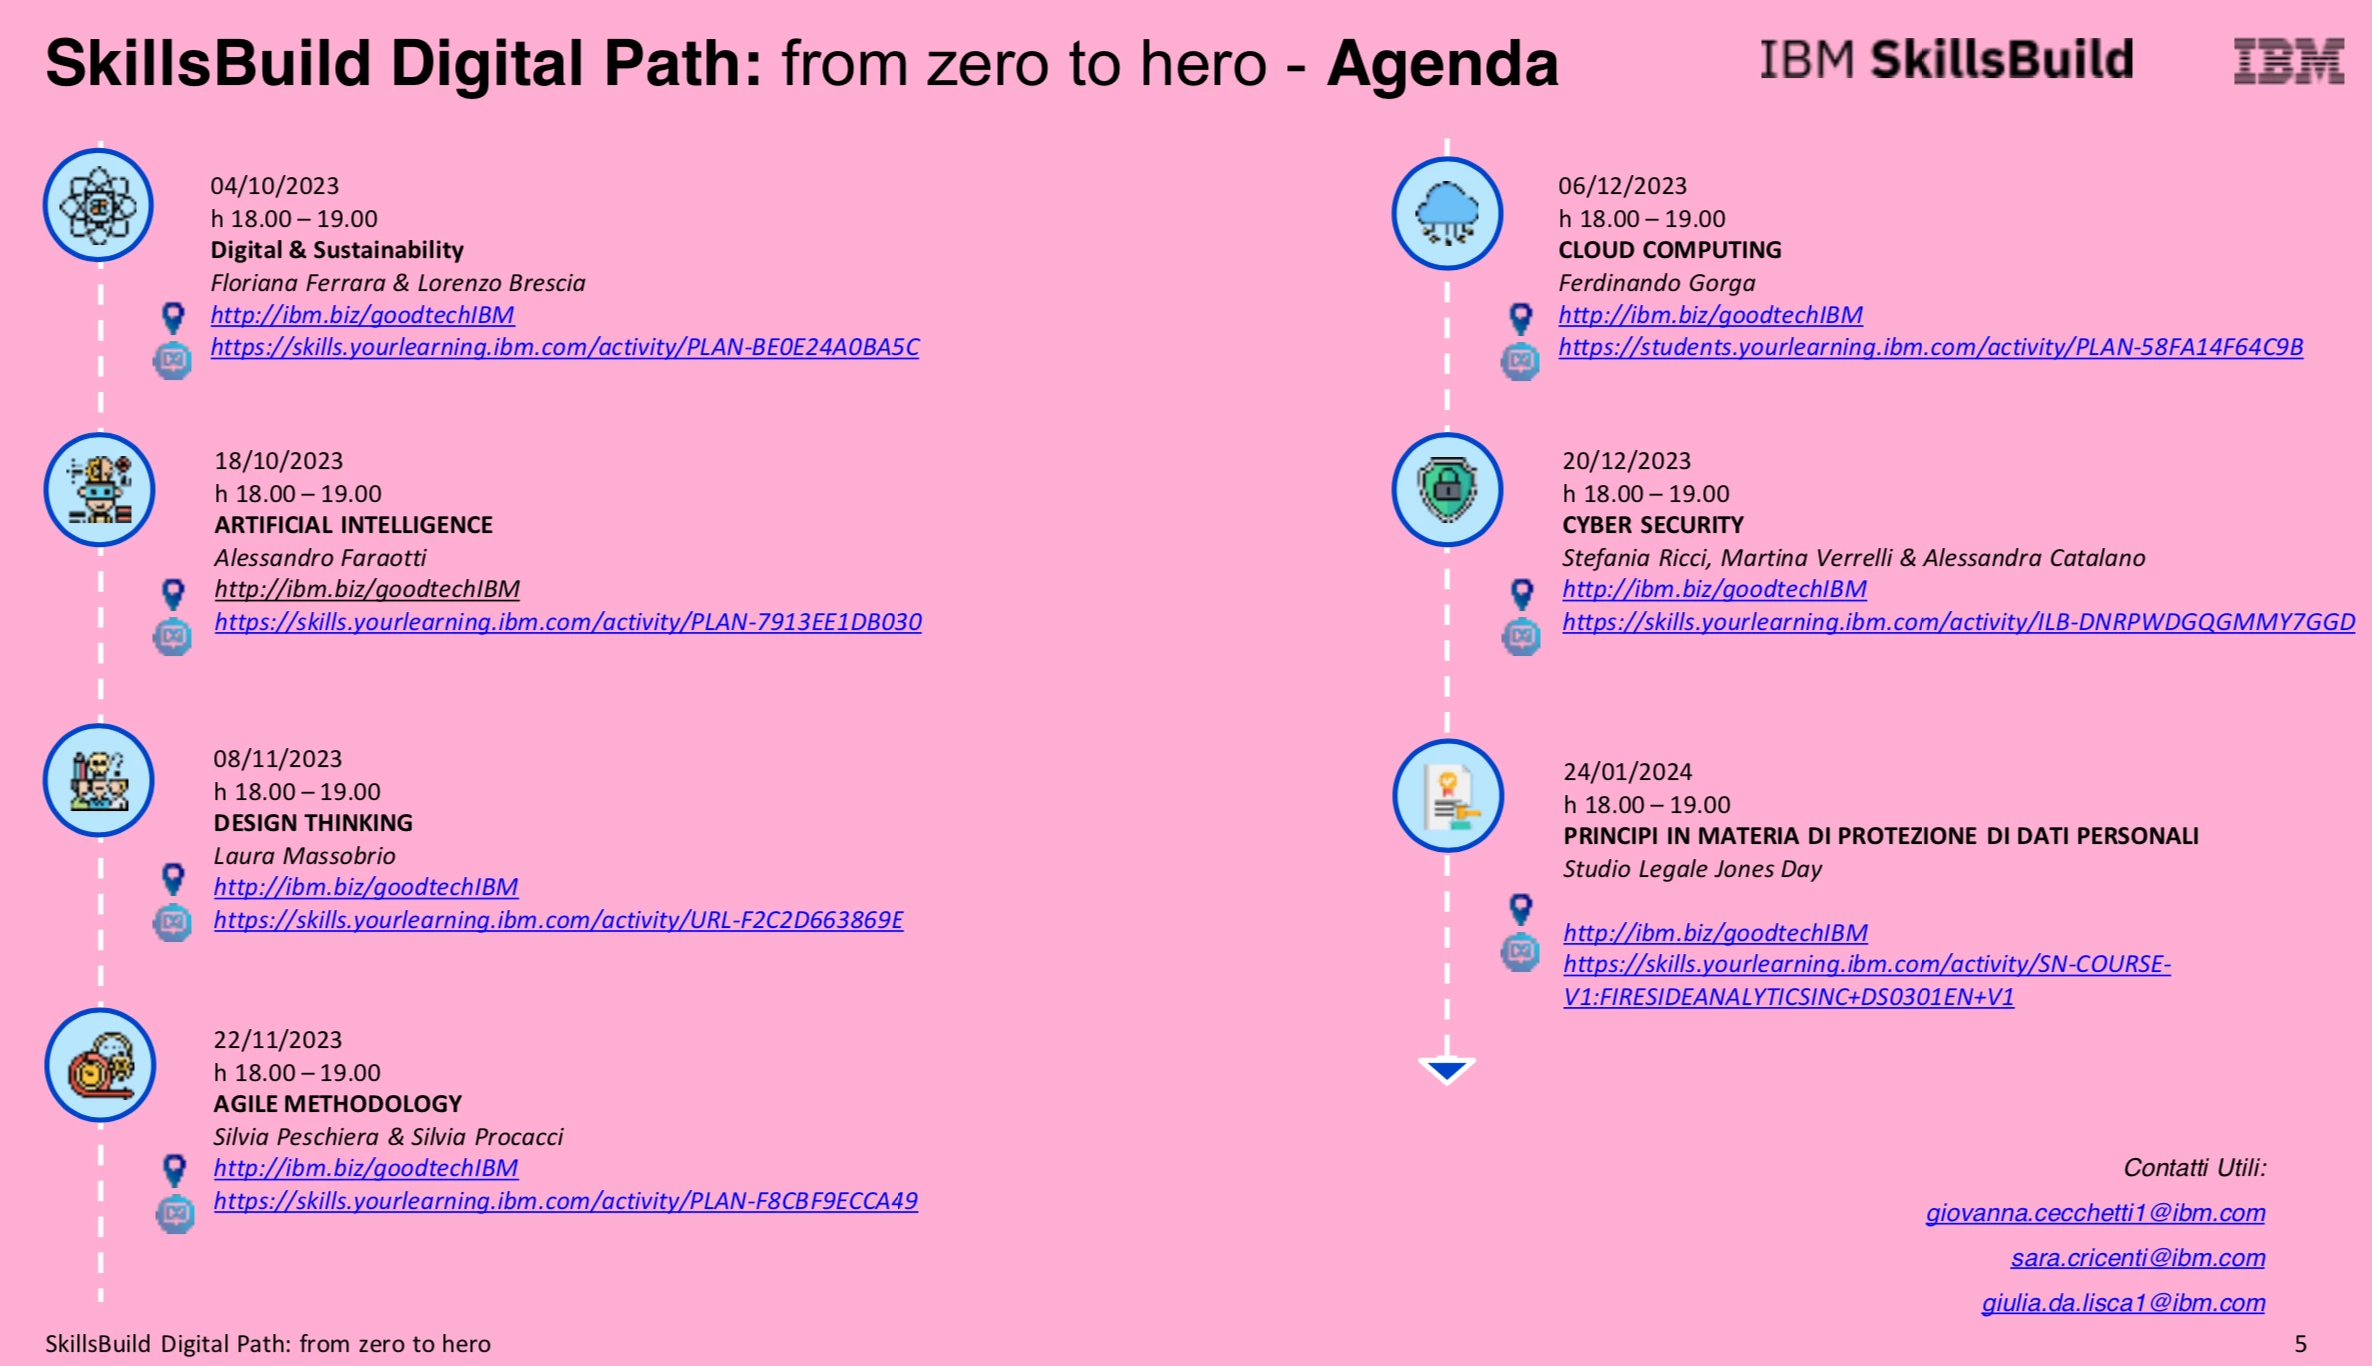 Riparte il progetto IBM SkillsBuild Digital Path: from zero to hero